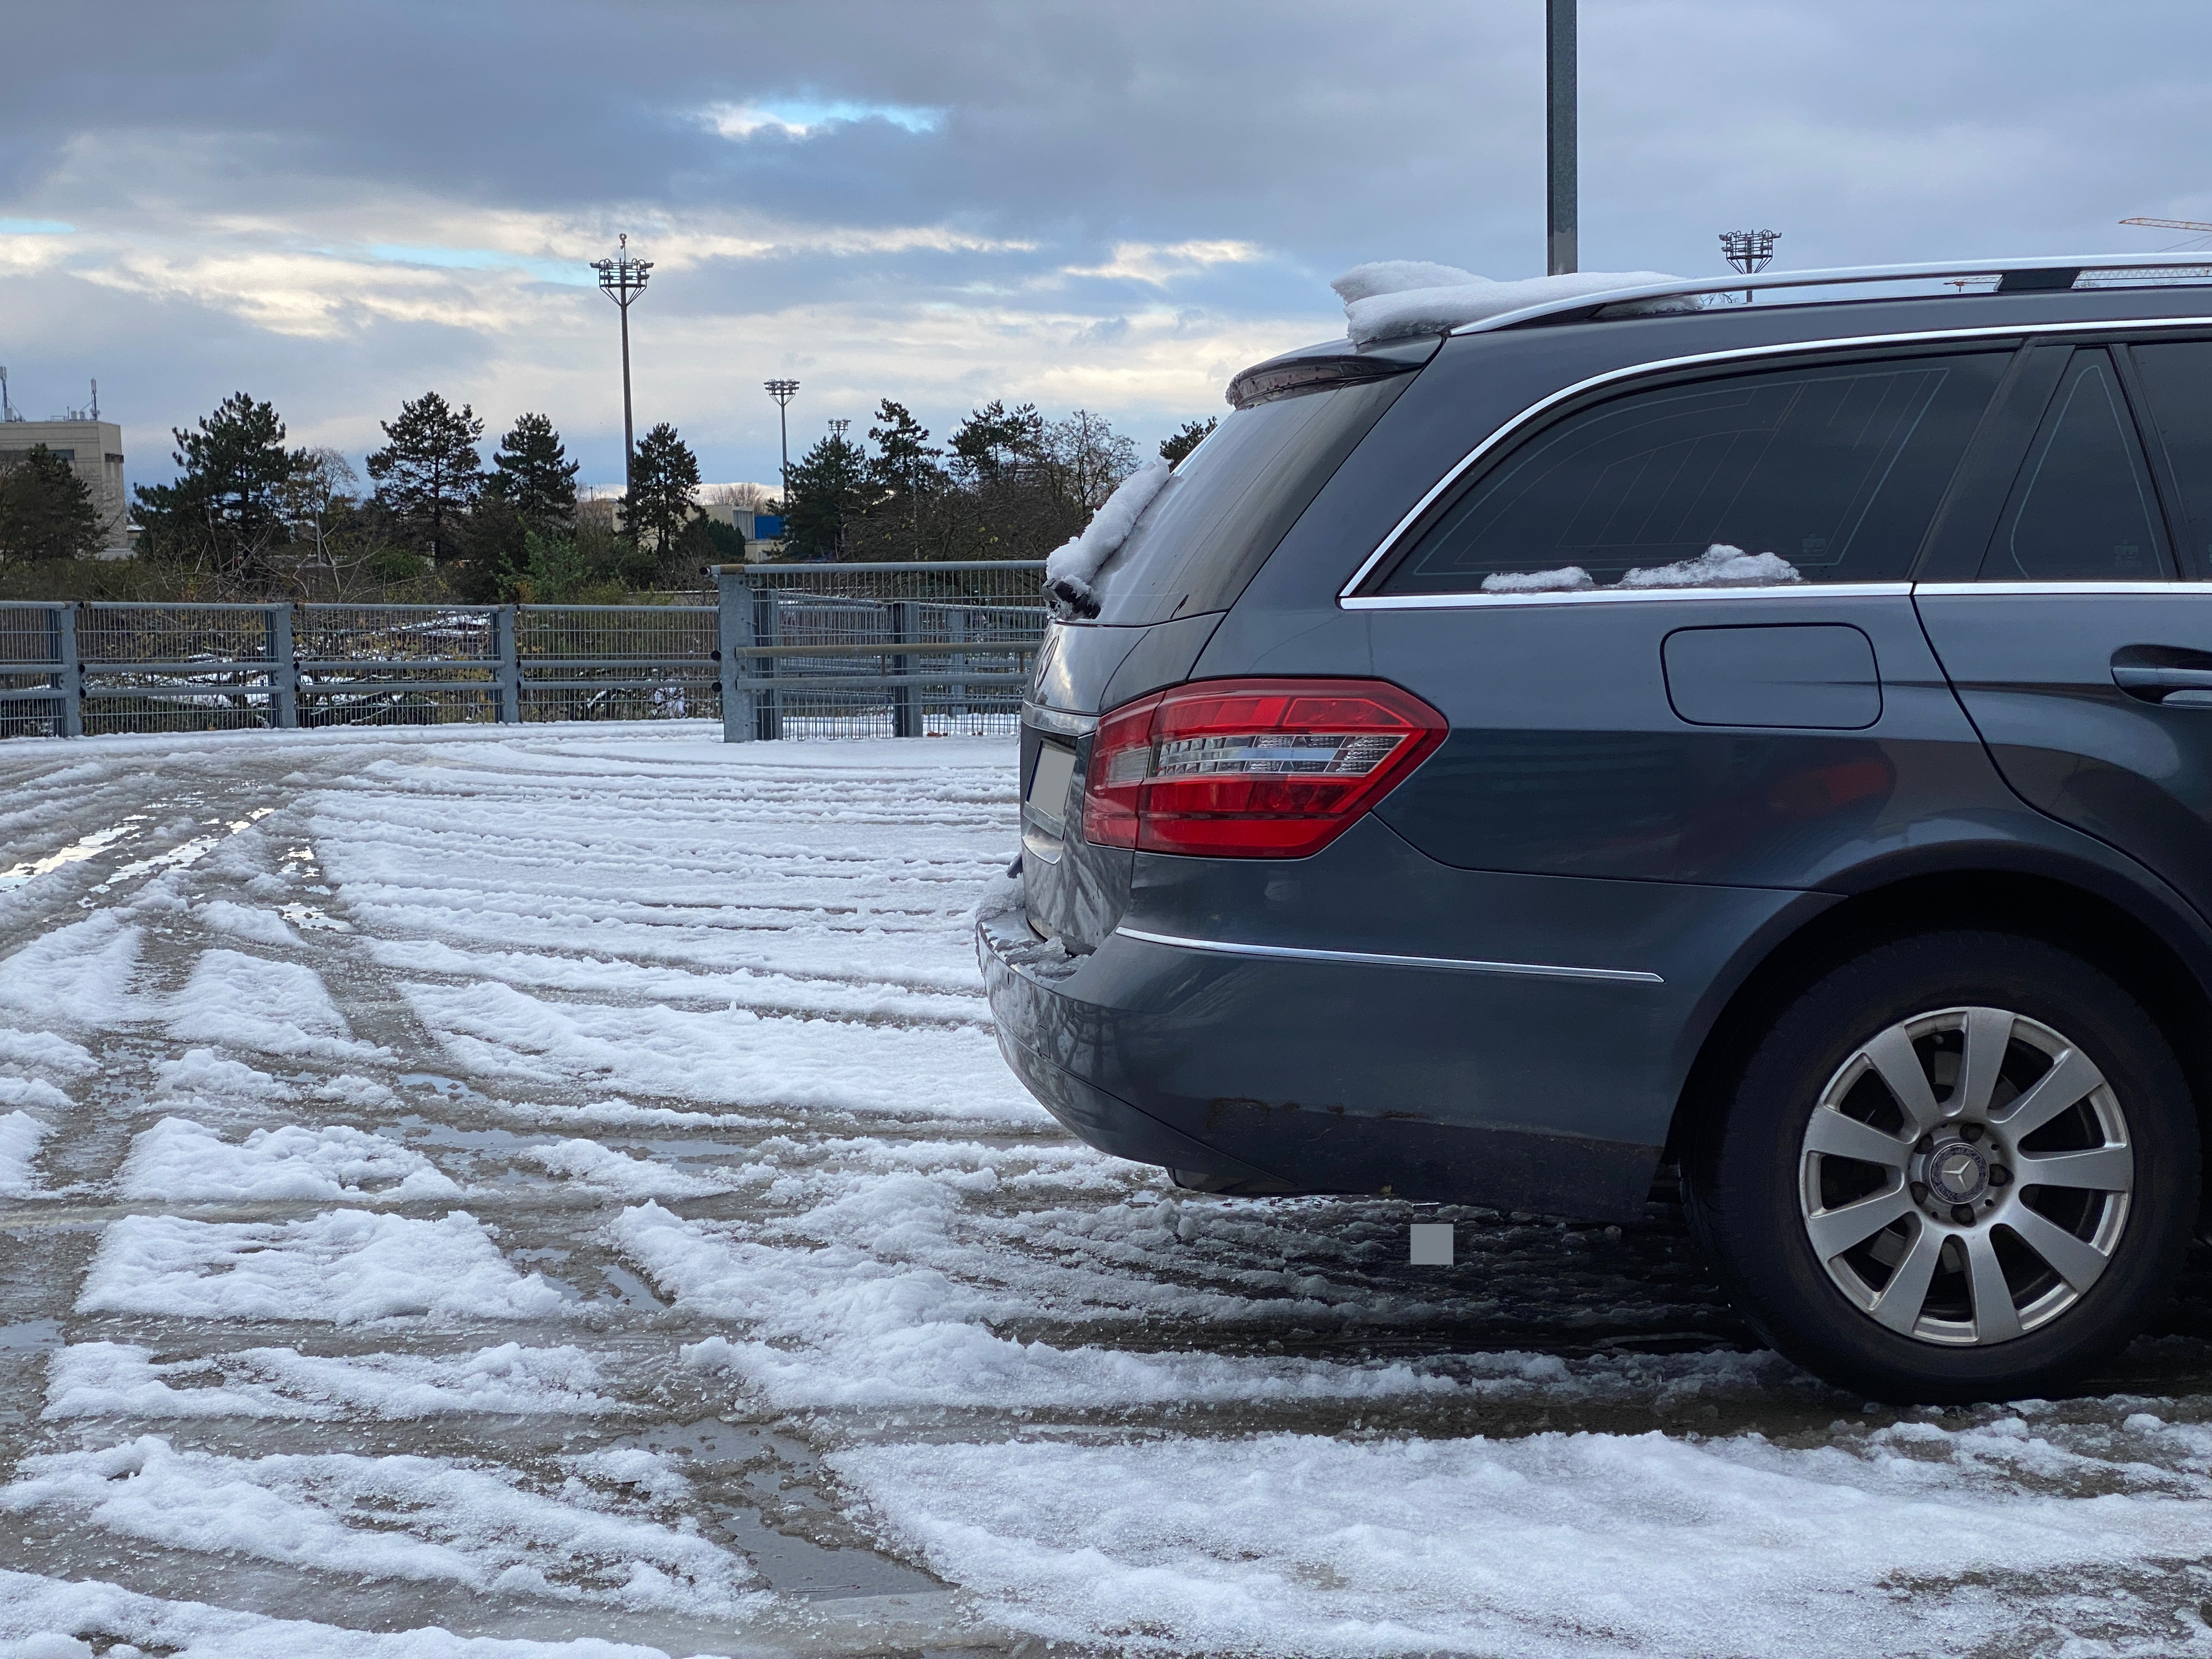 Eis & Schnee am Auto - für freie Sicht sorgen